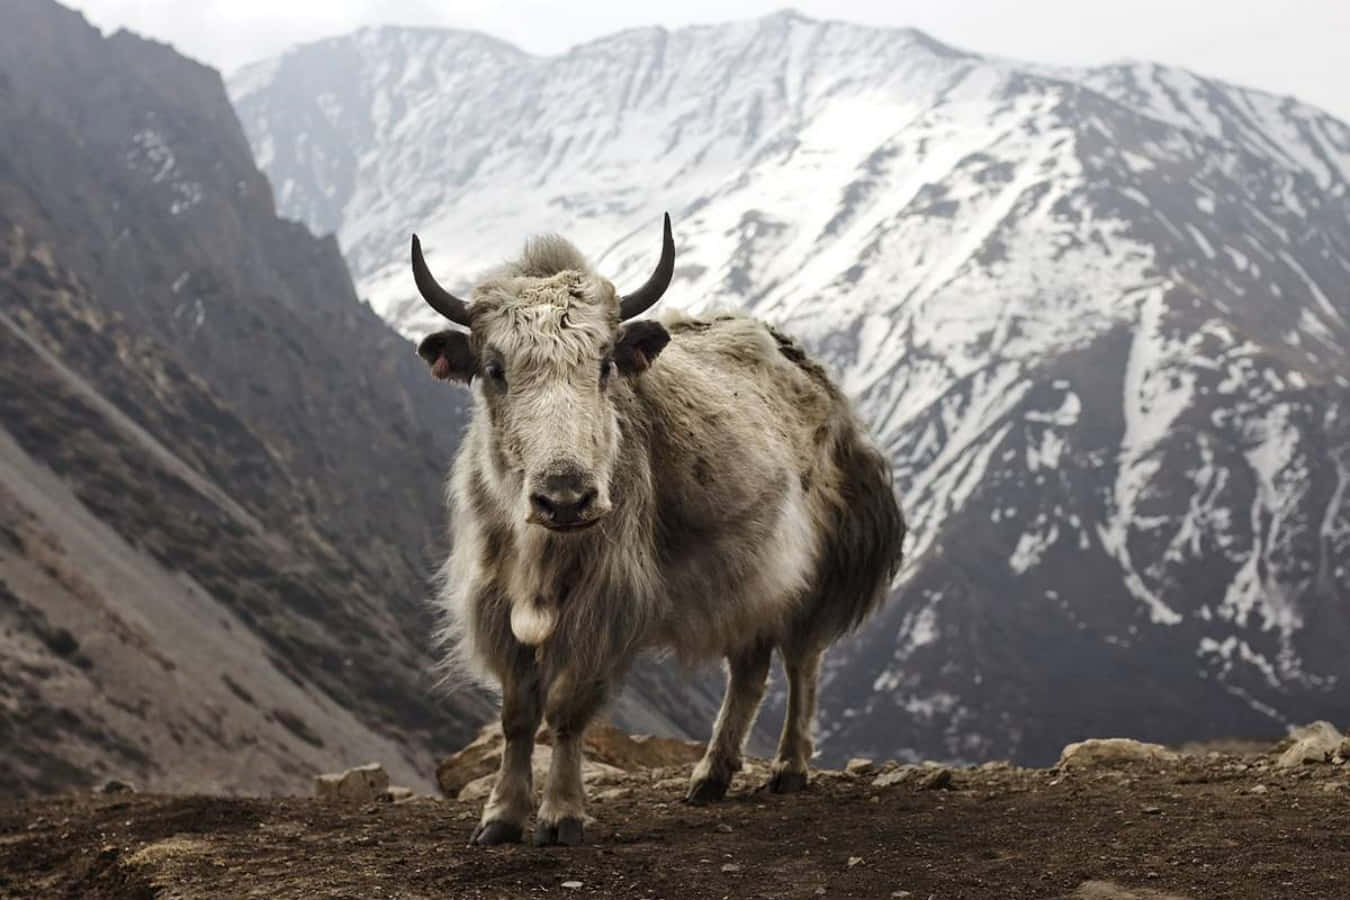 Unamanada De Majestuosos Yaks Deambula Por El Himalaya.